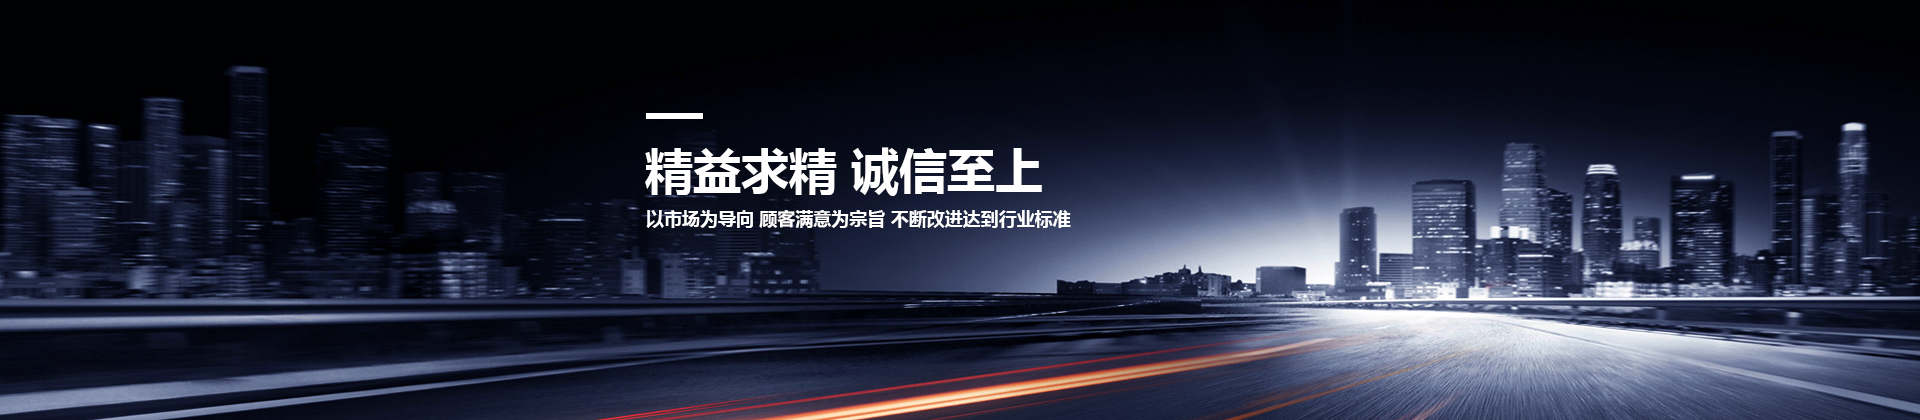 博鱼体育平台(中国)有限公司设计